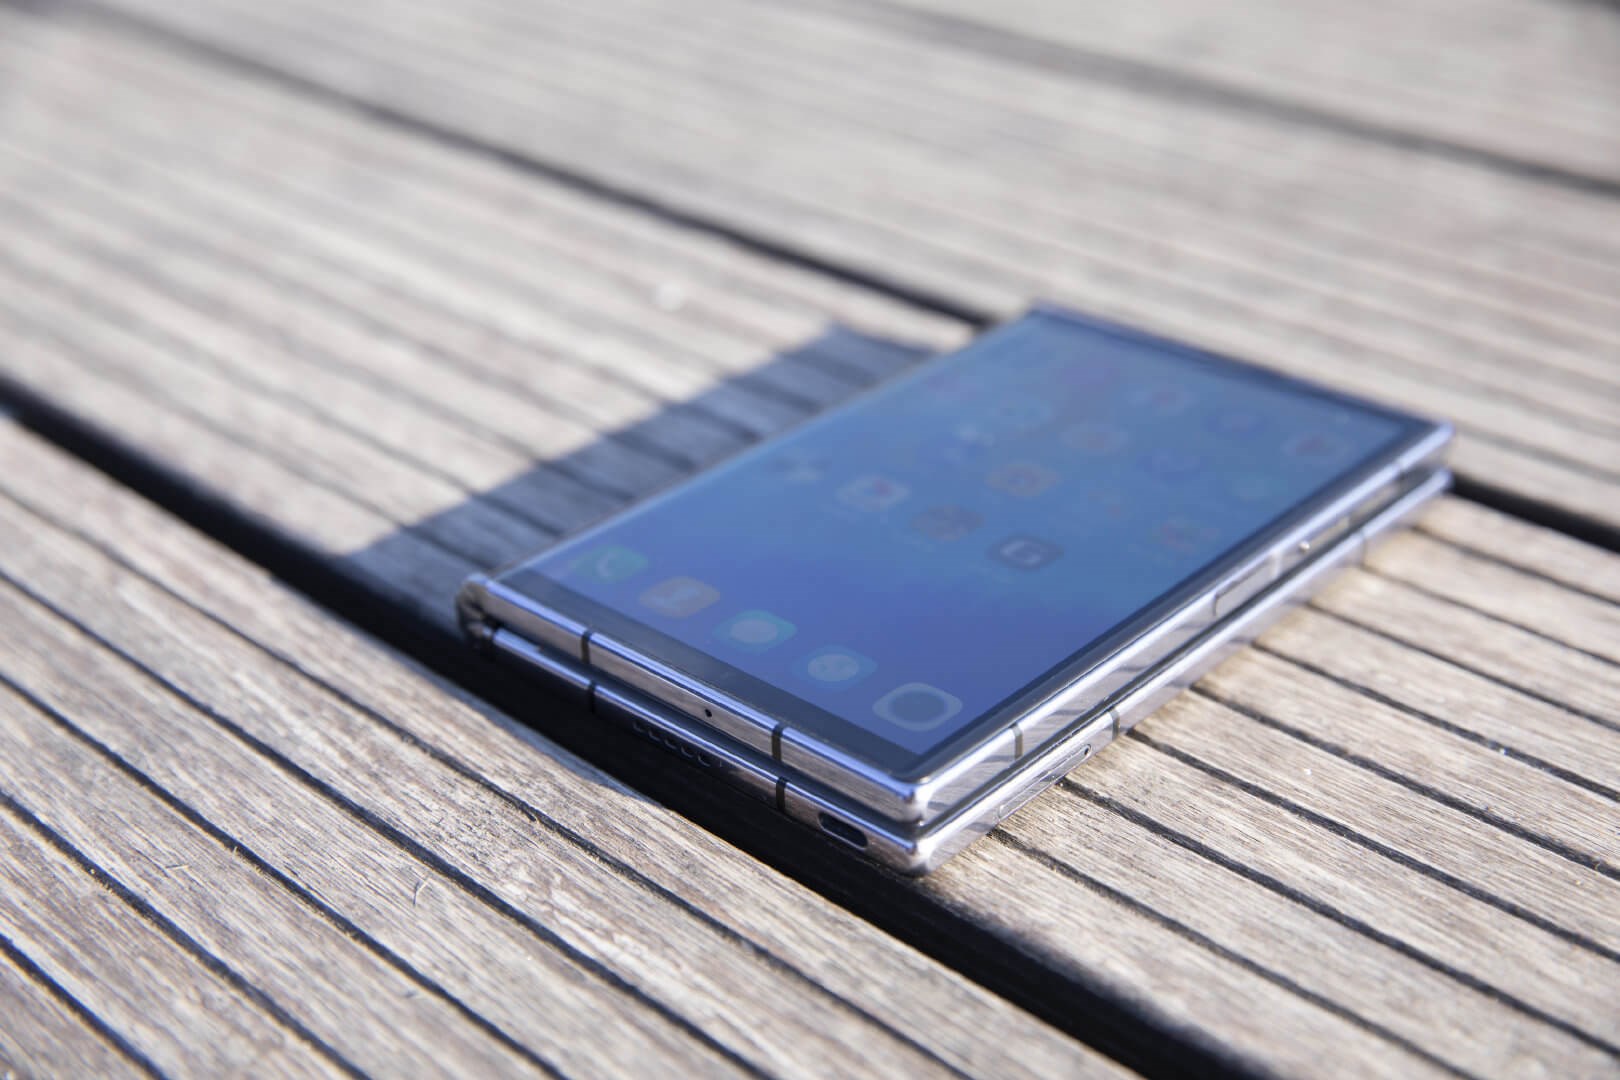 Royole yeni katlanabilir telefonu FlexPai 2'yi tanıttı: Öncekinden çok daha iddialı